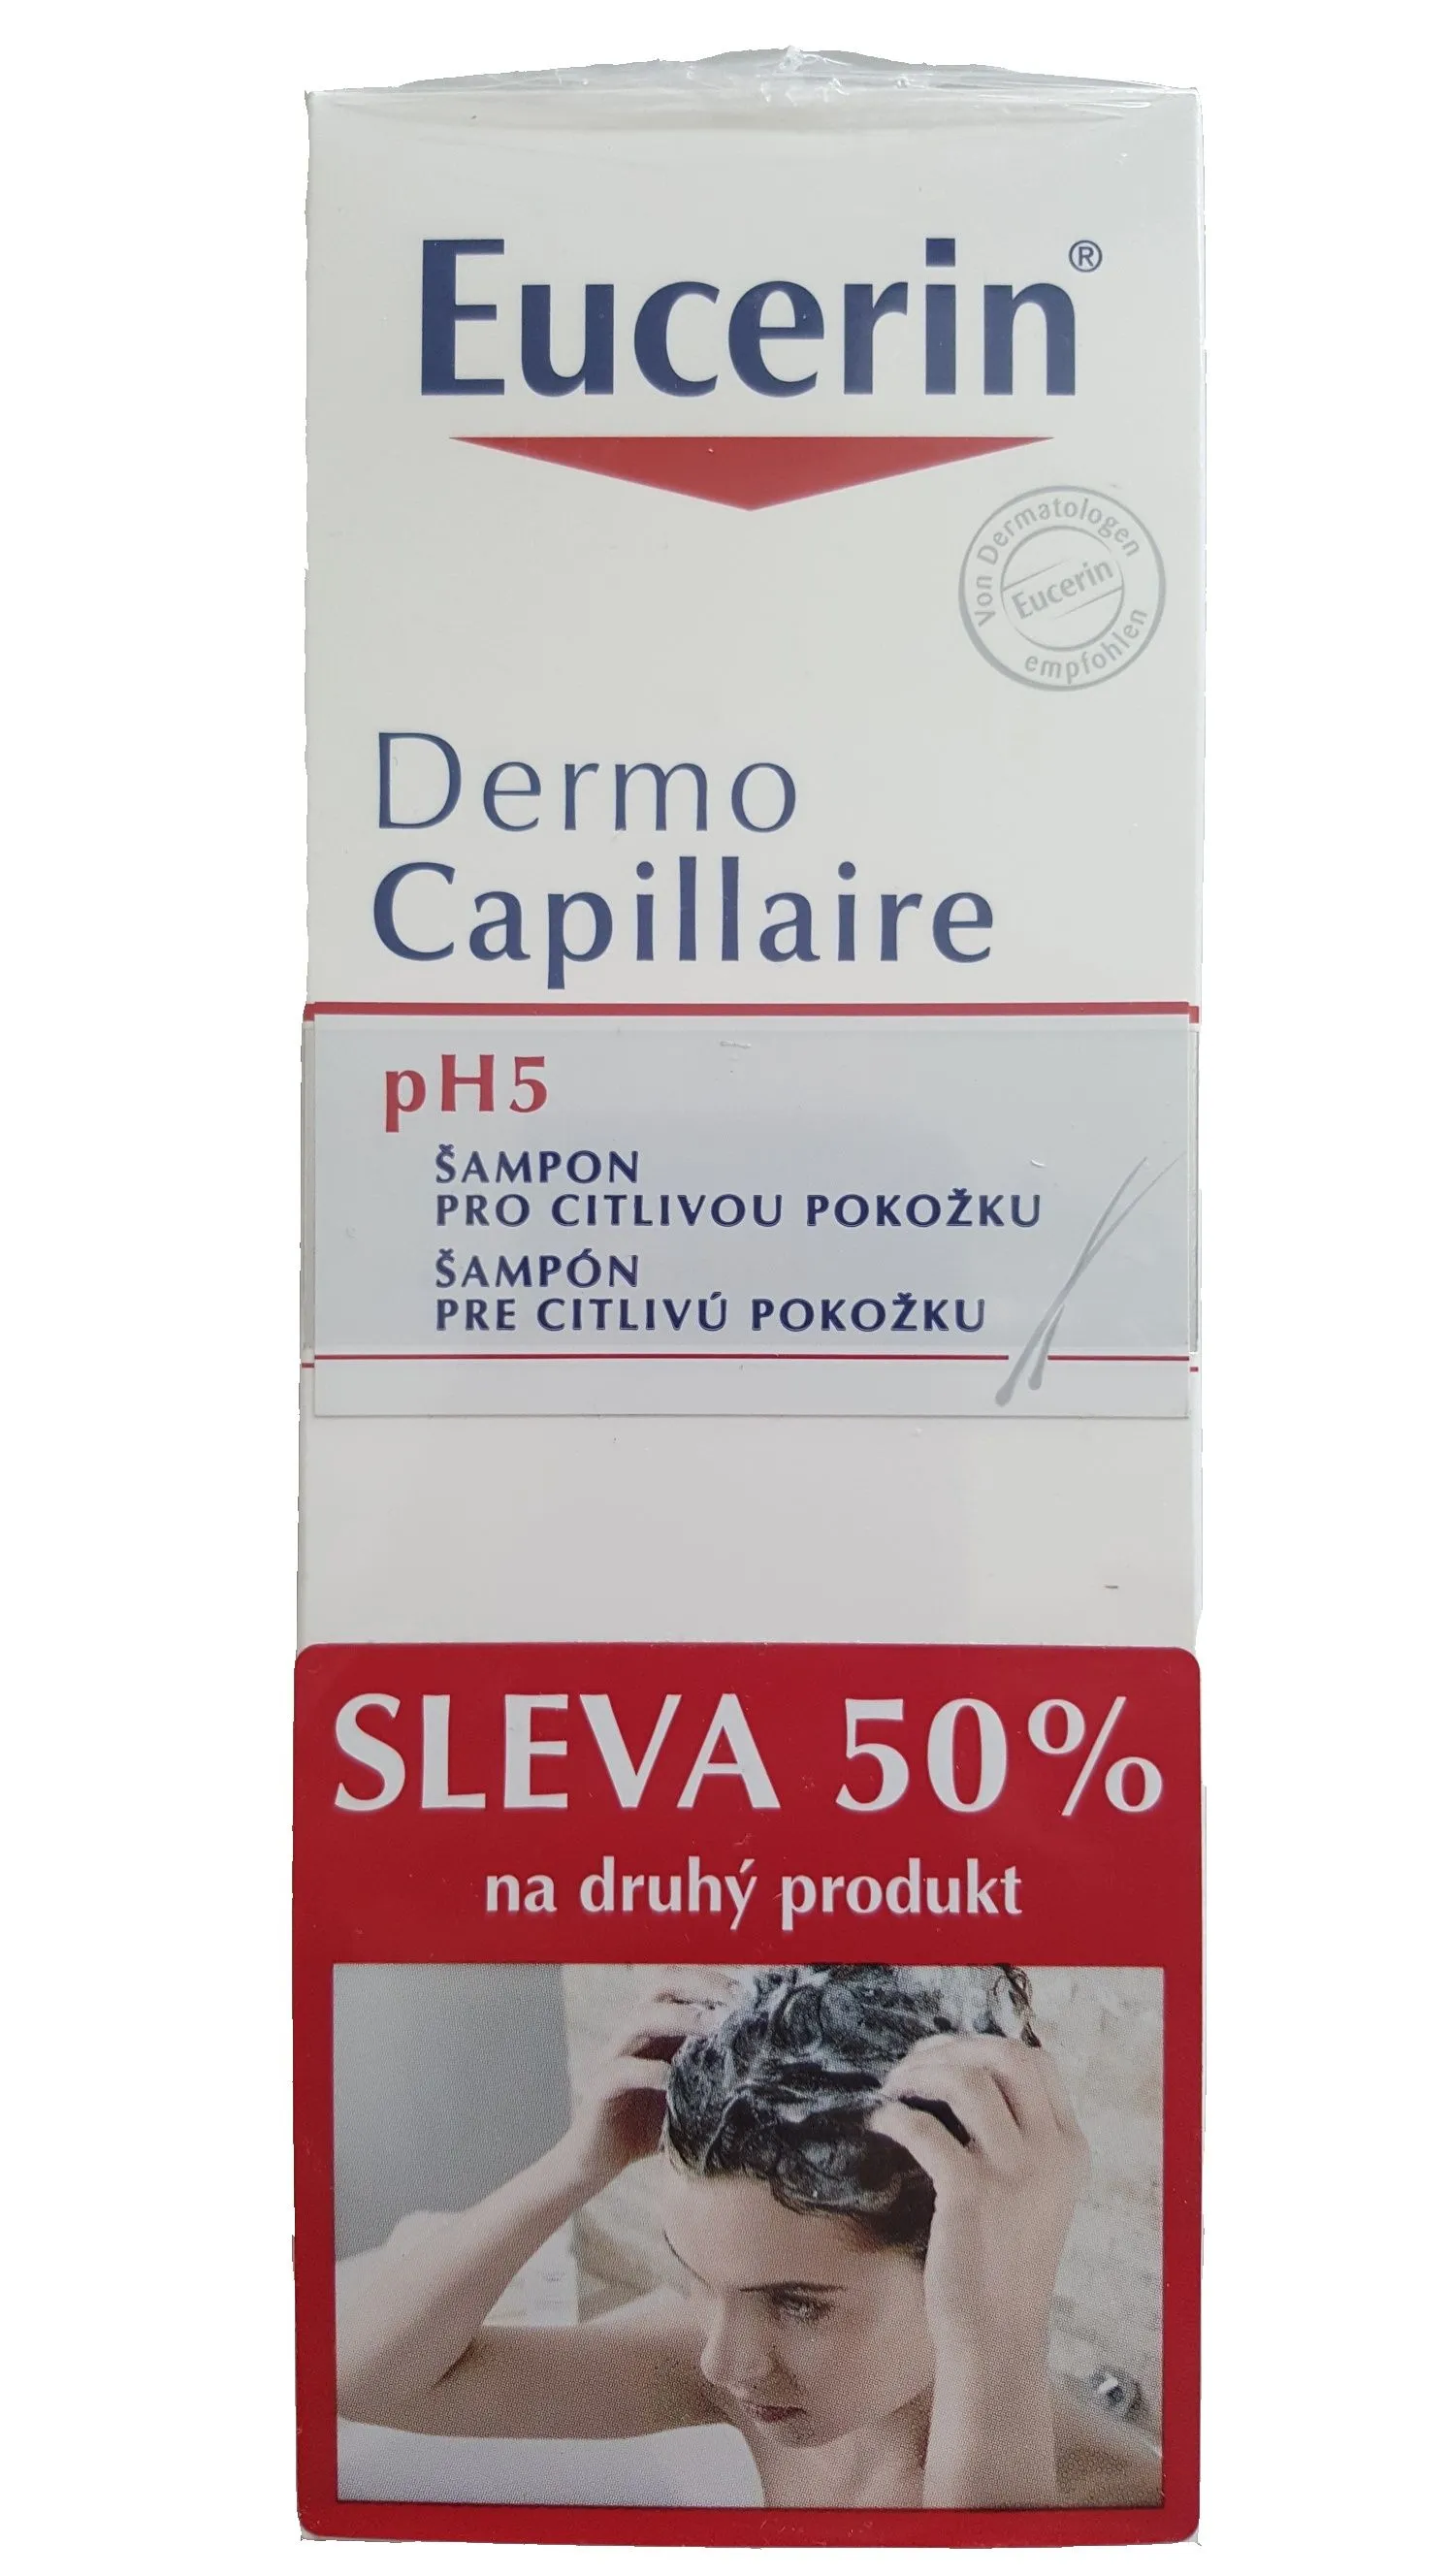 EUCERIN DermoCapillaire pH5 šampon pro citlivou pokožku promo 2017